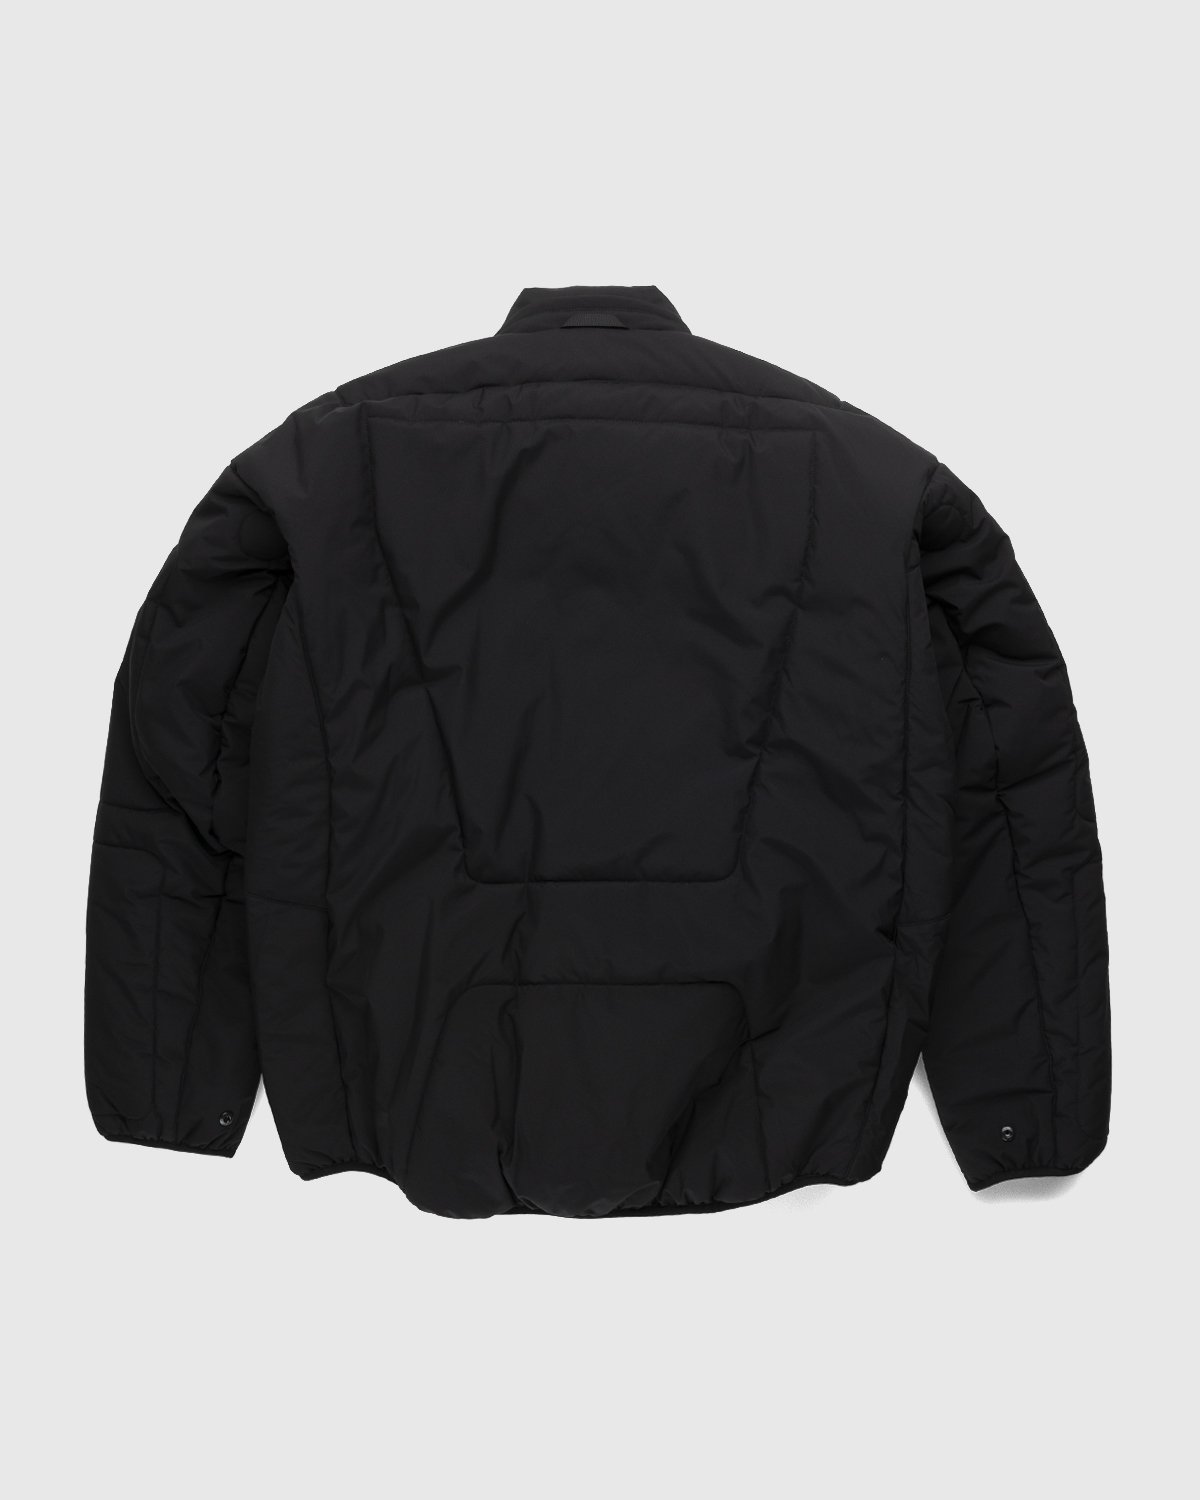 ACRONYM - J91-WS Jacket Black - Clothing - Black - Image 2